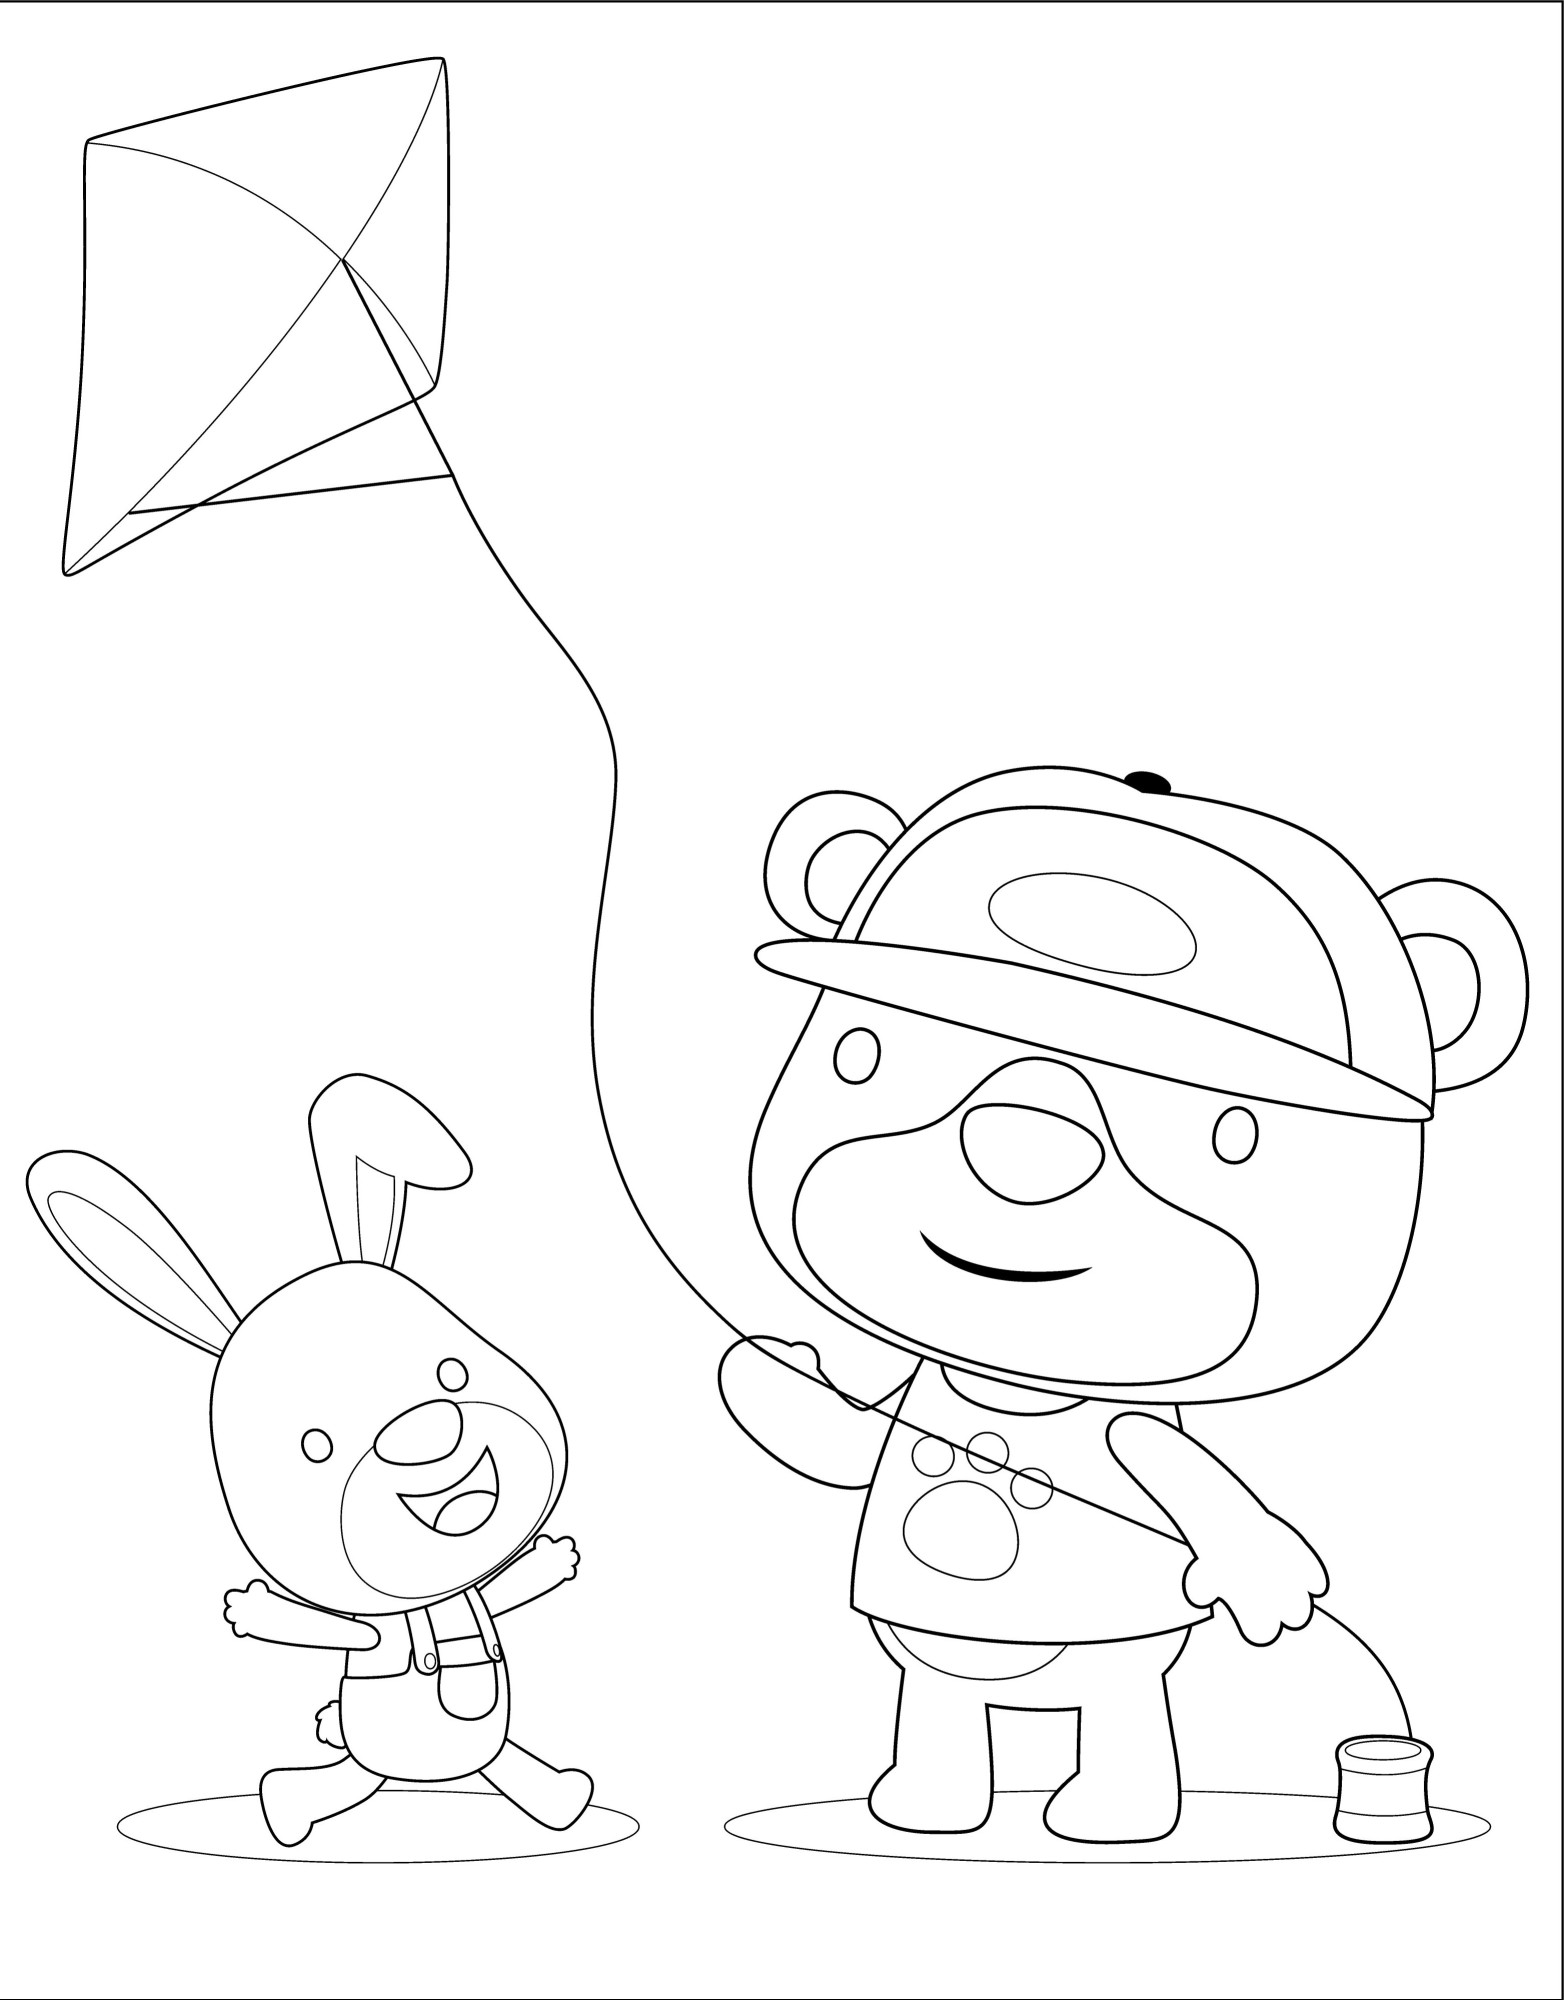 Раскраска для детей: мультяшные игрушки заяц и медведь играют с воздушным змеем